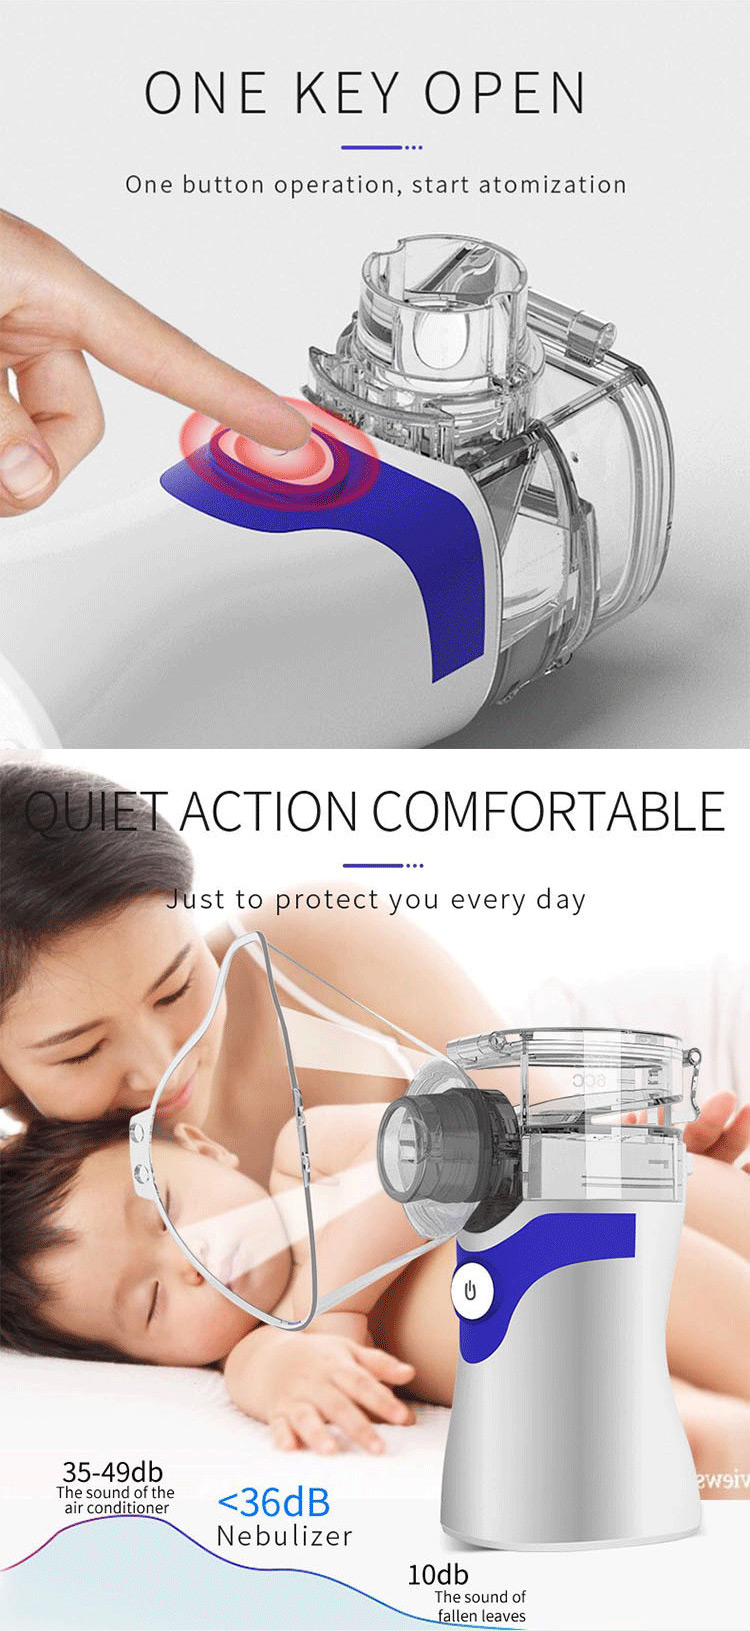 mesin nebulizer portabel untuk asma